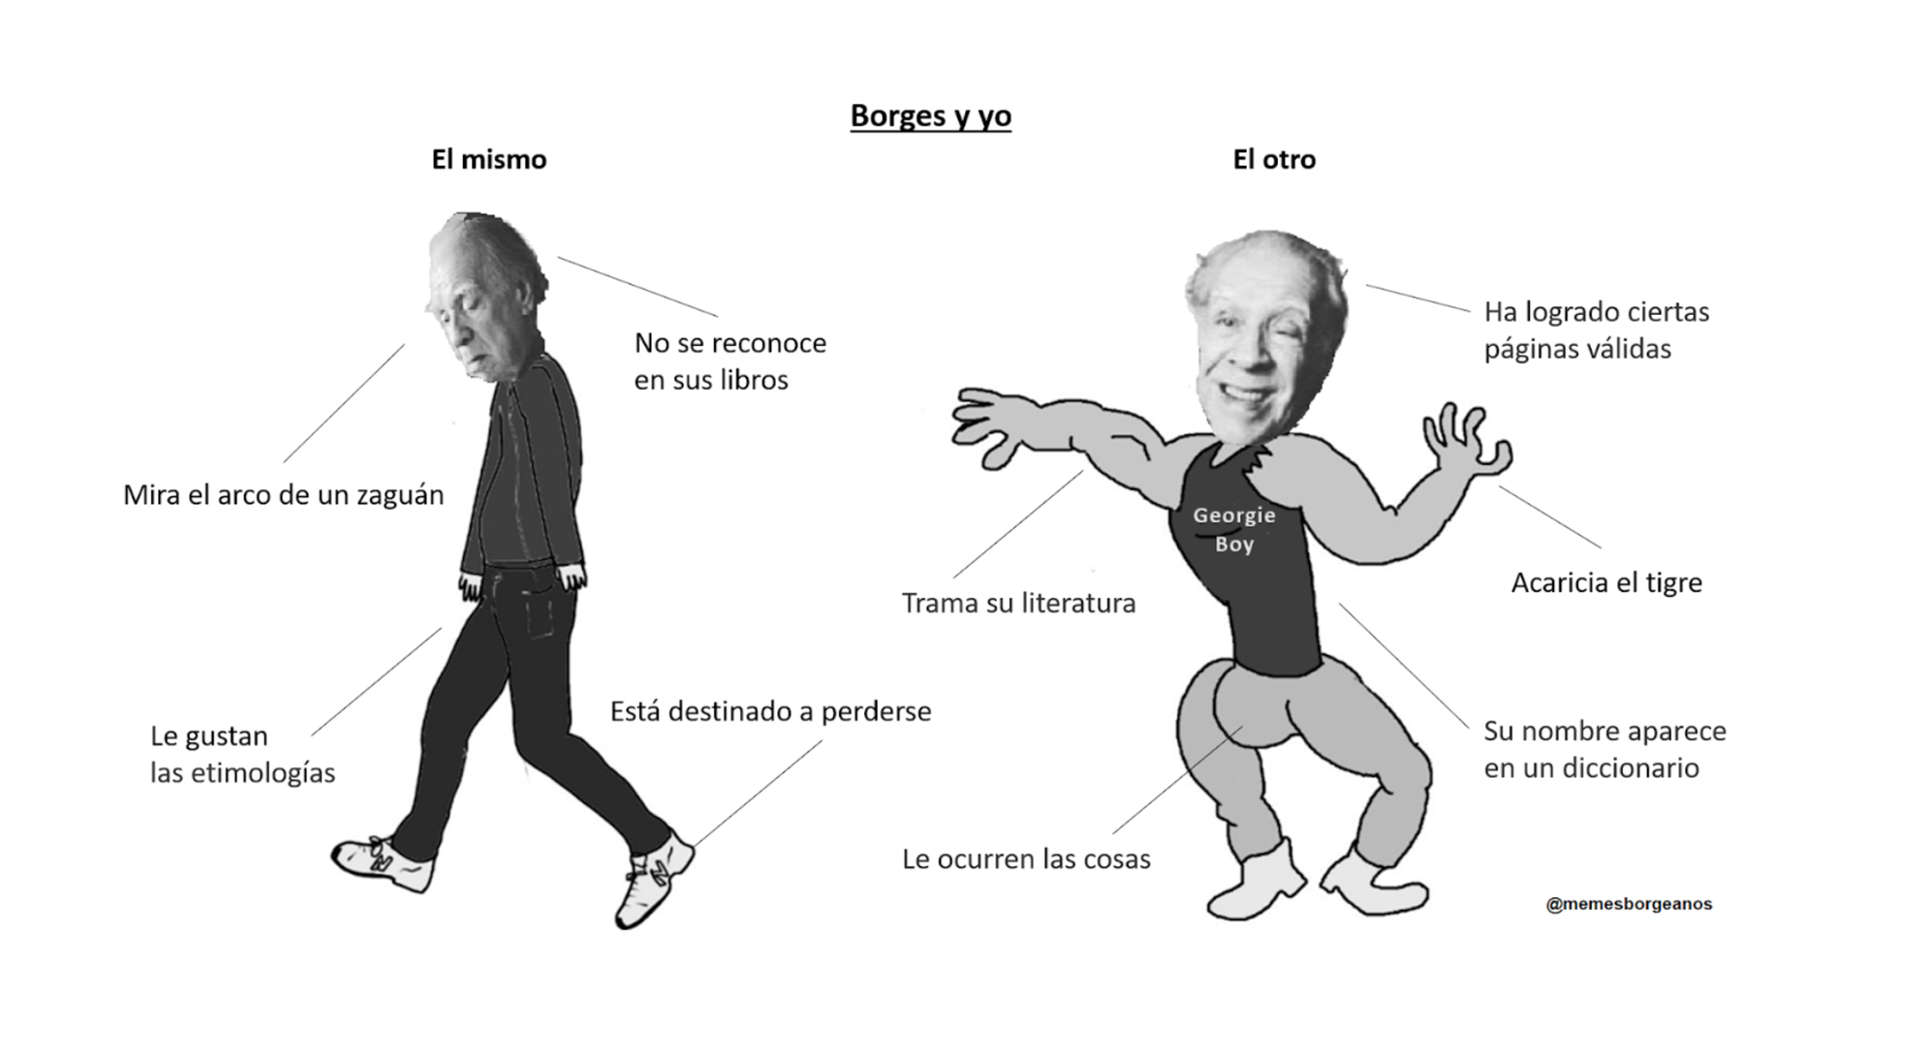 "De repente me encontré maquinalmente haciendo memes de Borges, sobre Borges, con Borges, por Borges, contra Borges y desde Borges", explica el creador de la página de memes sobre el autor.